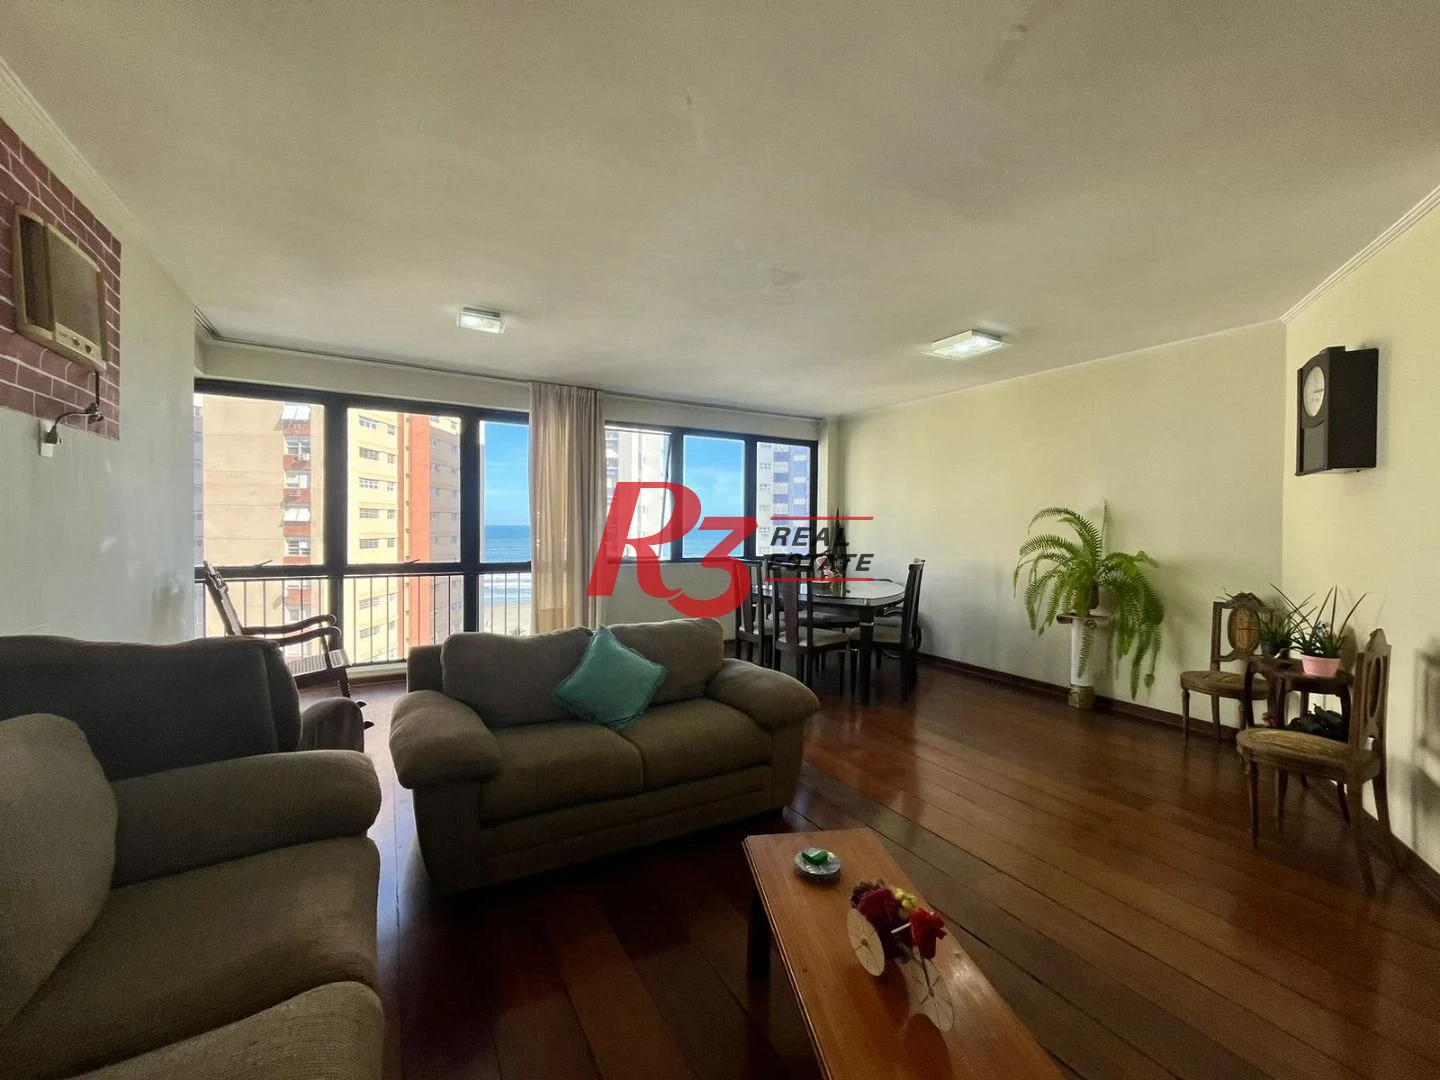 Apartamento com 2 dormitórios à venda, 126 m² por R$ 590.000,00 - José Menino - Santos/SP